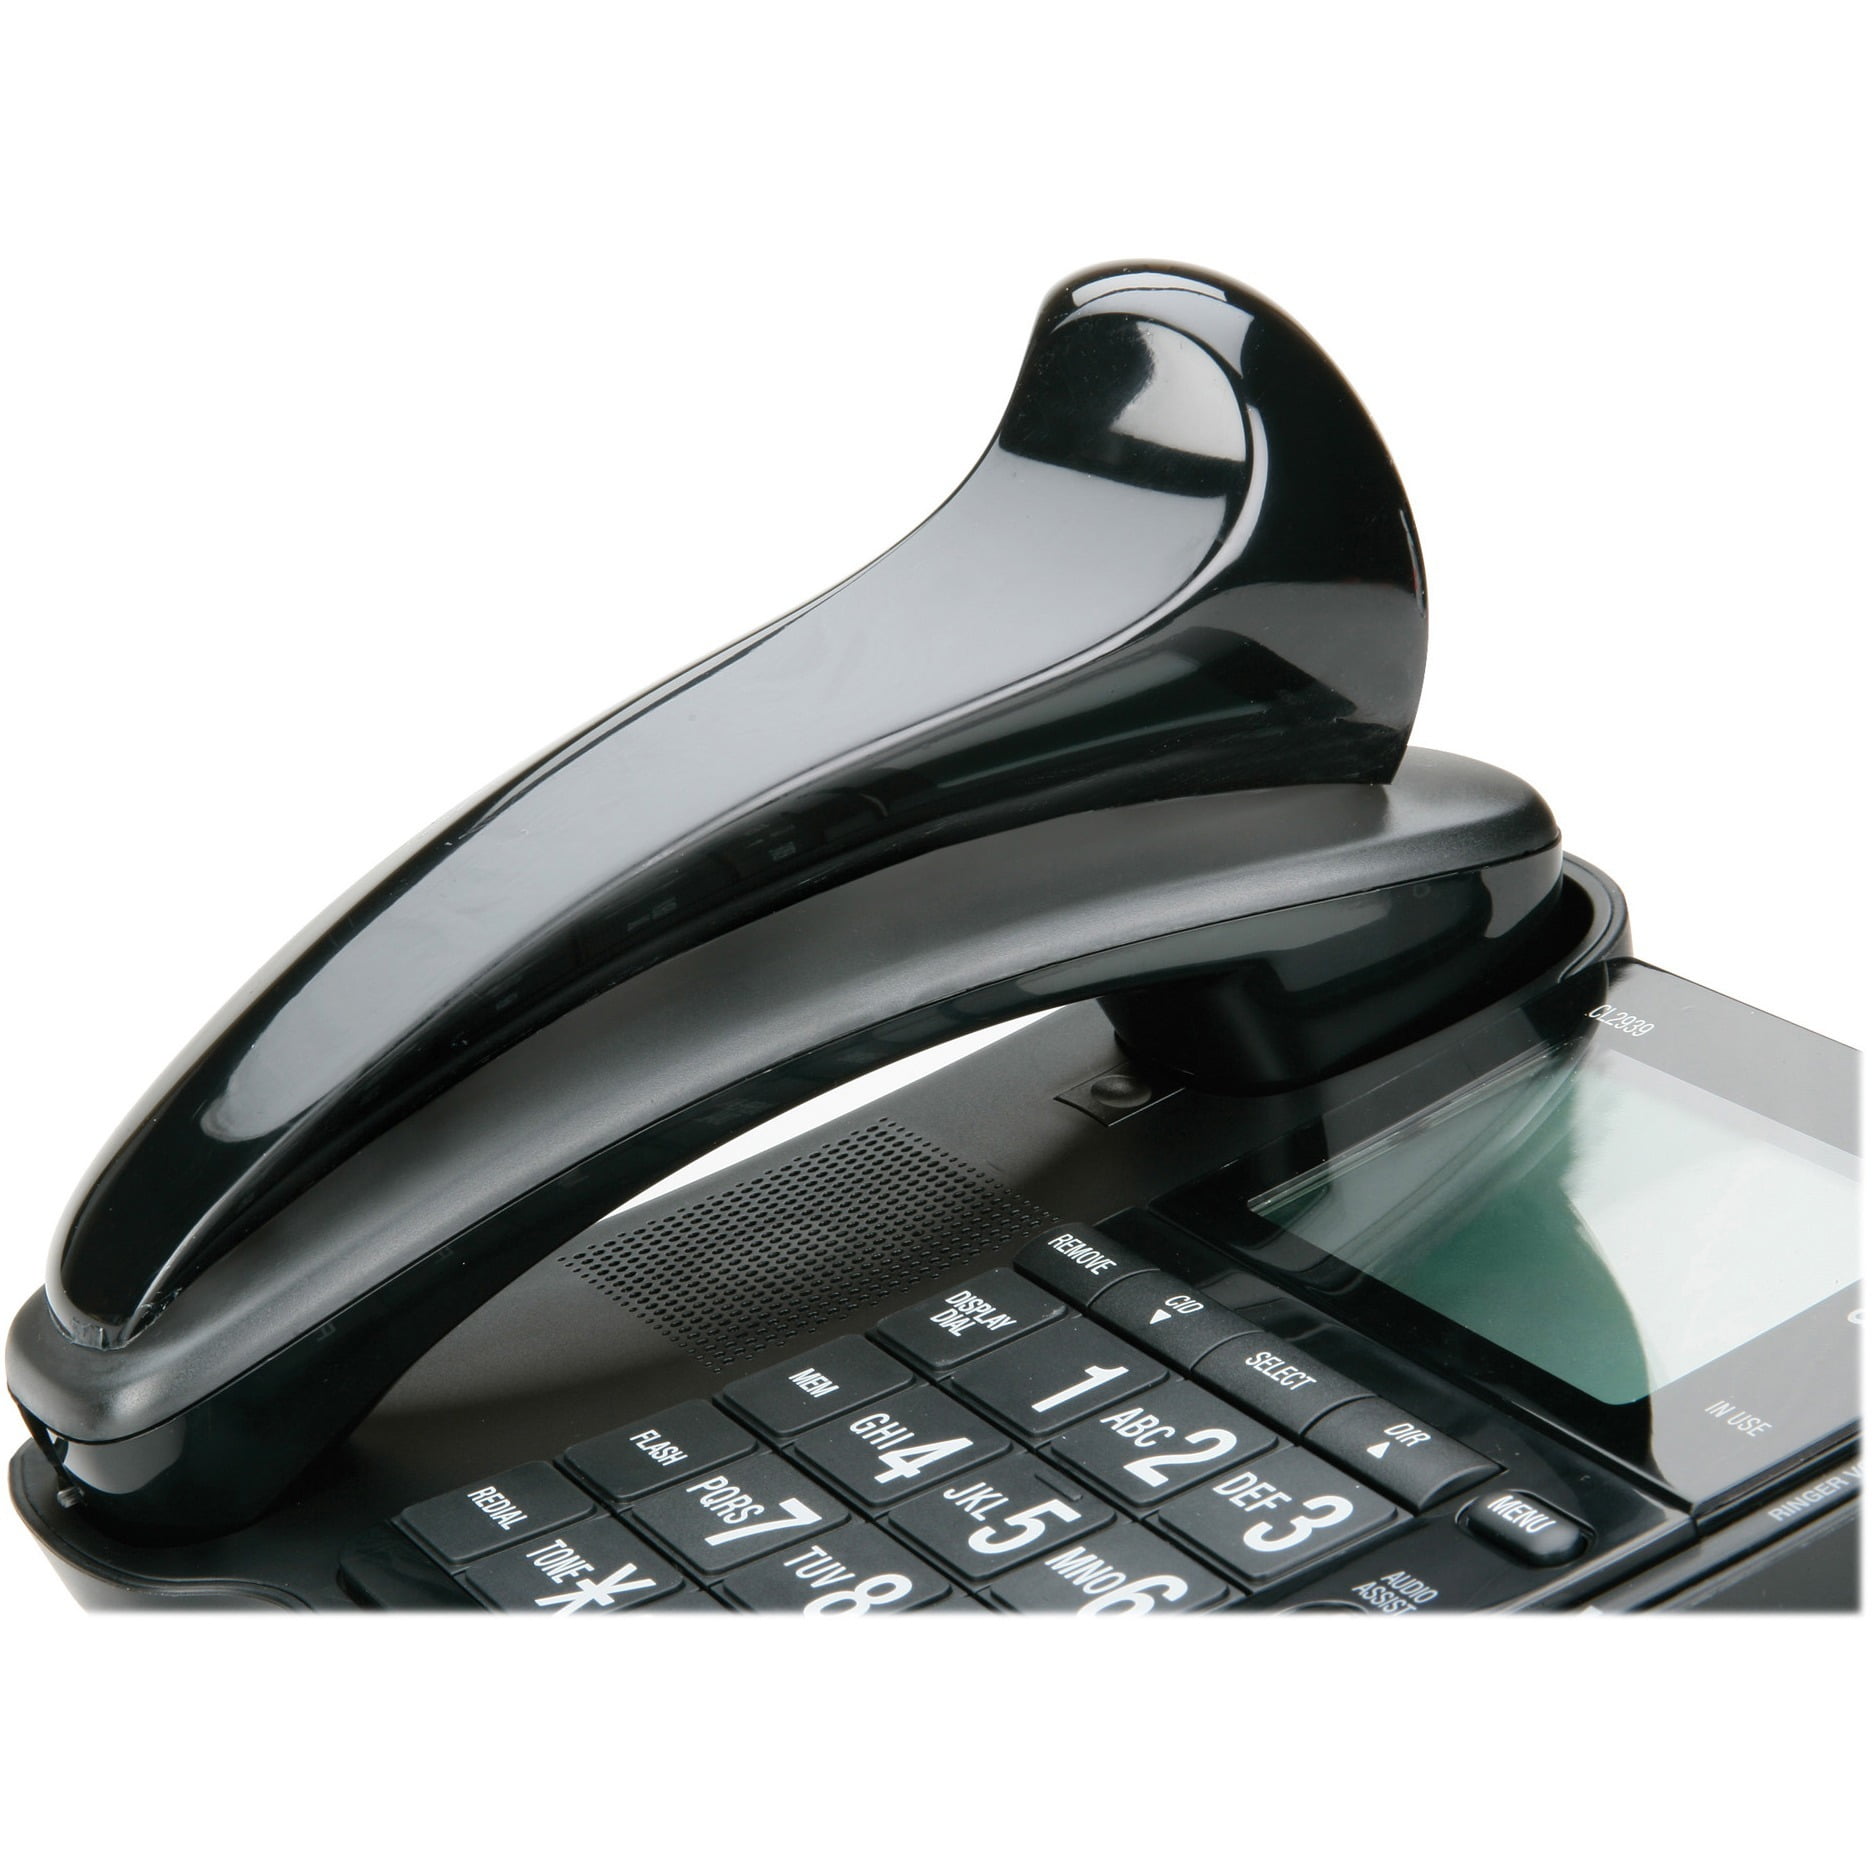 Details about   Telephone Shoulder Rest Softalk Black Office Phone Holder New I3 